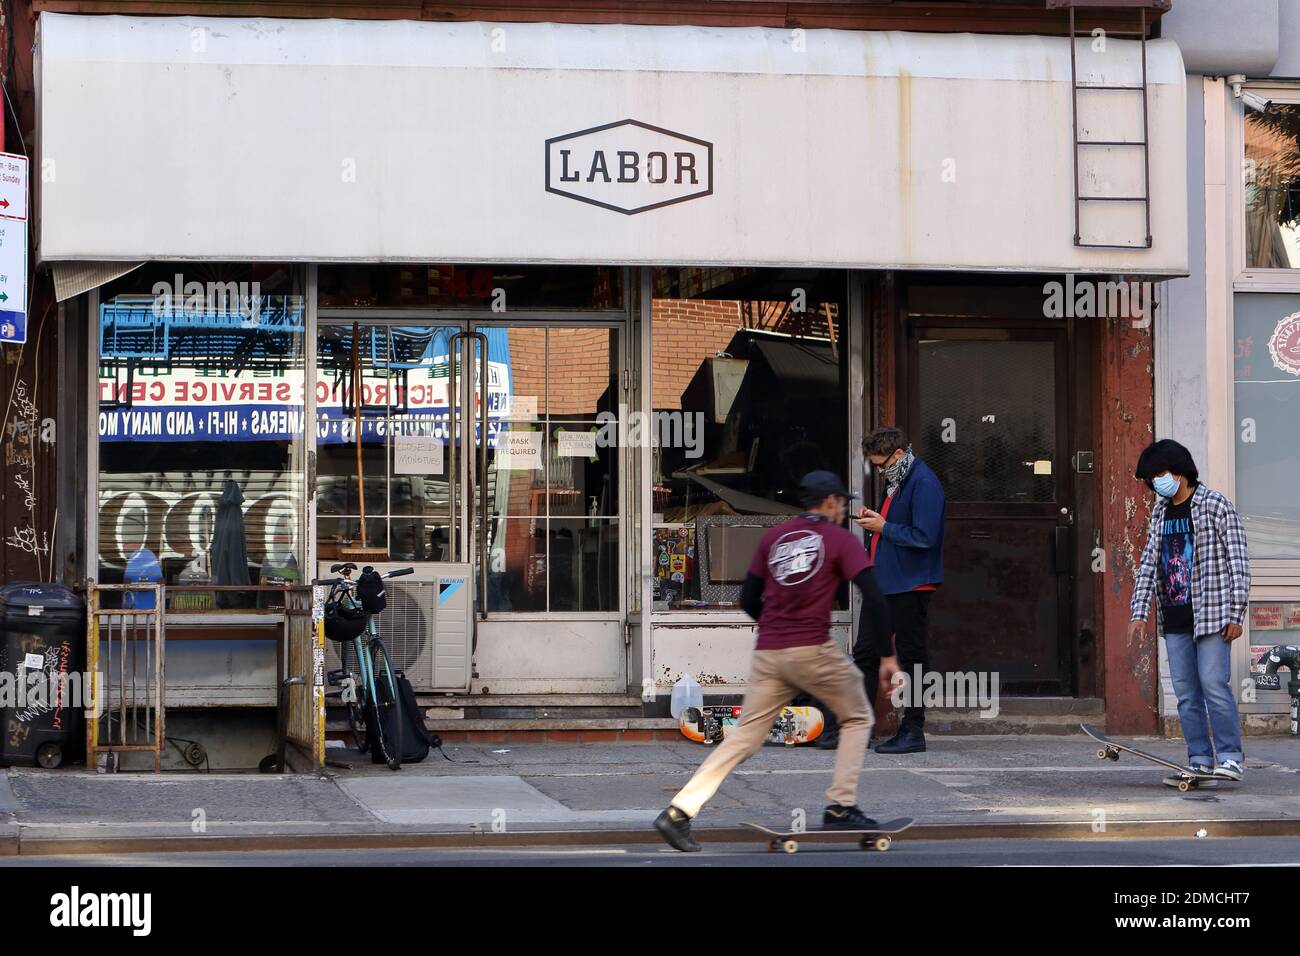 Labor Skateboard Shop, 46 Canal St, New York, NY. Außenfassade eines Skateboard Shops im Lower East Side Viertel von Manhattan. Stockfoto